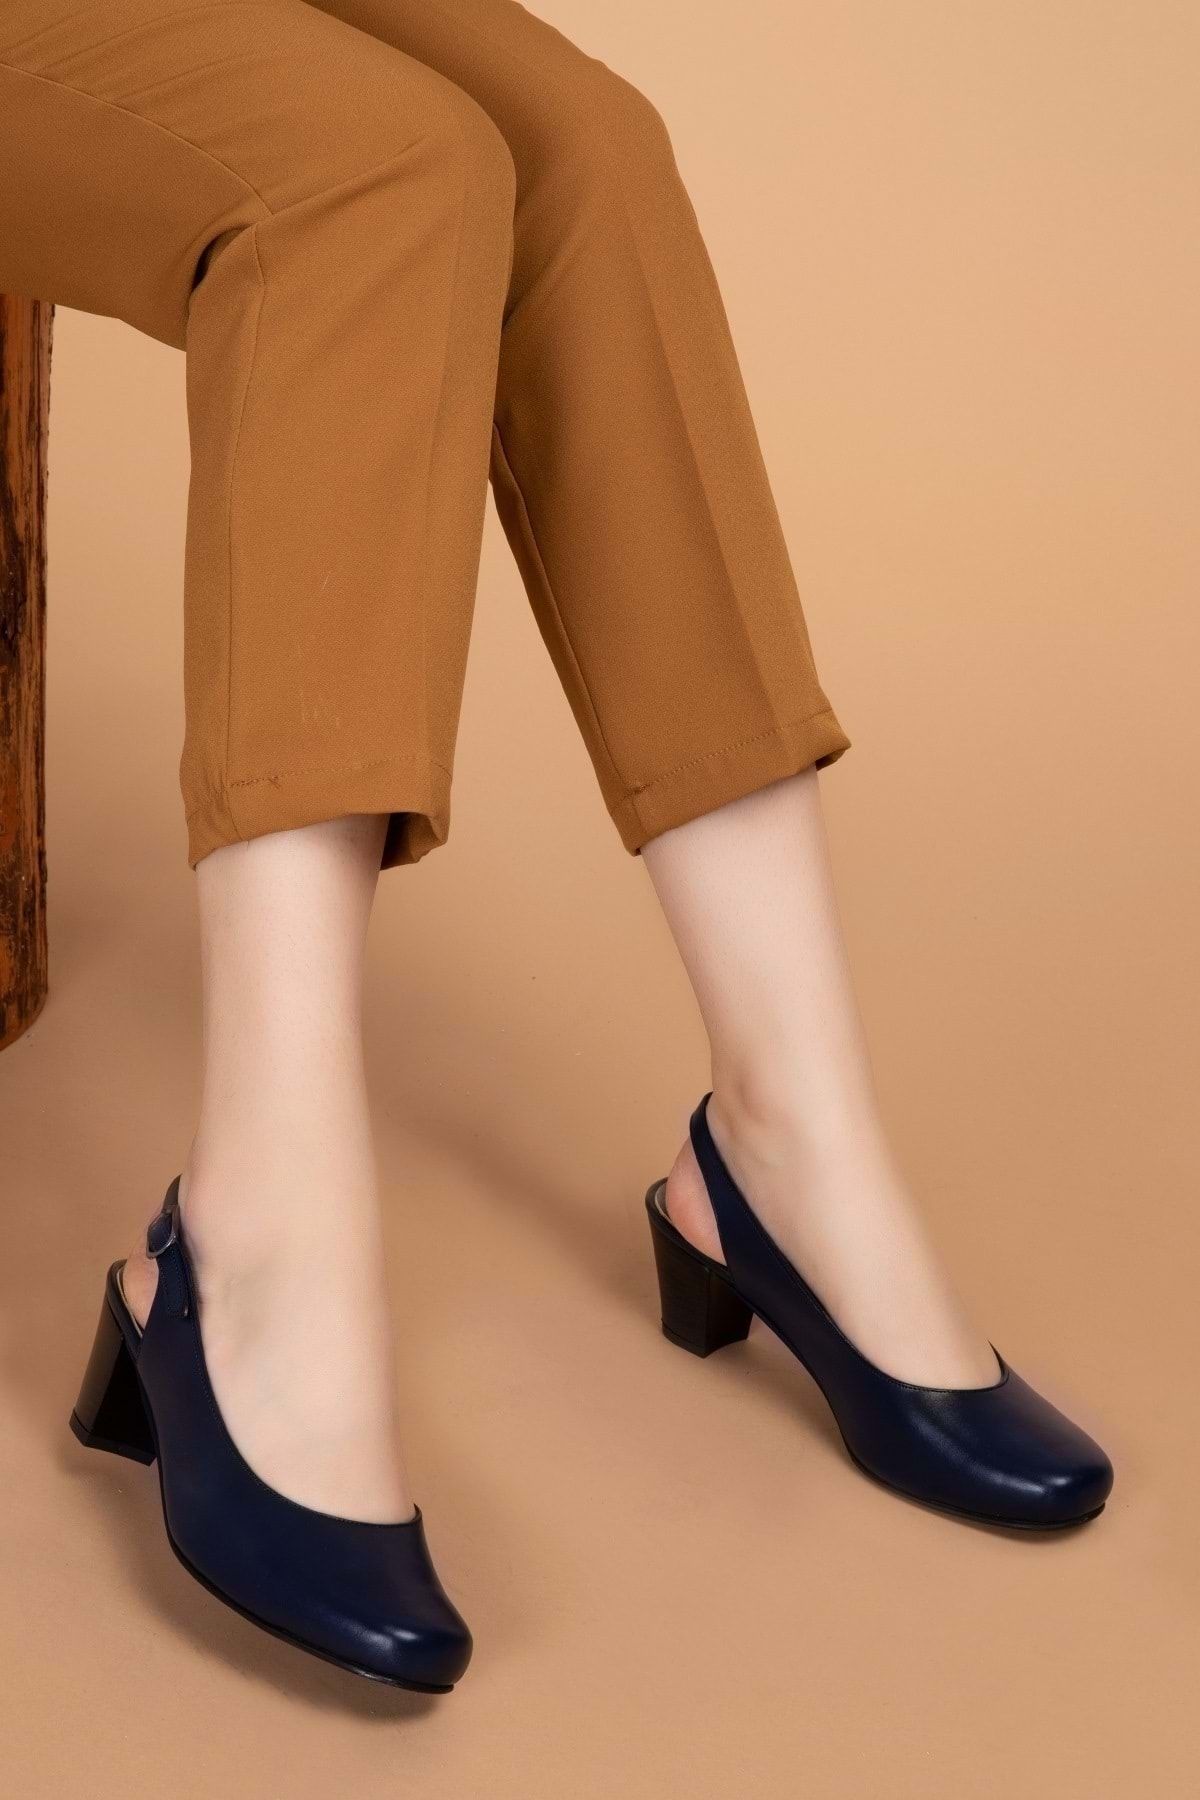 Gondol Kadın Hakiki Deri Klasik Topuklu Ayakkabı Şhn.119 - - Şhn.119 - Lacivert - 40